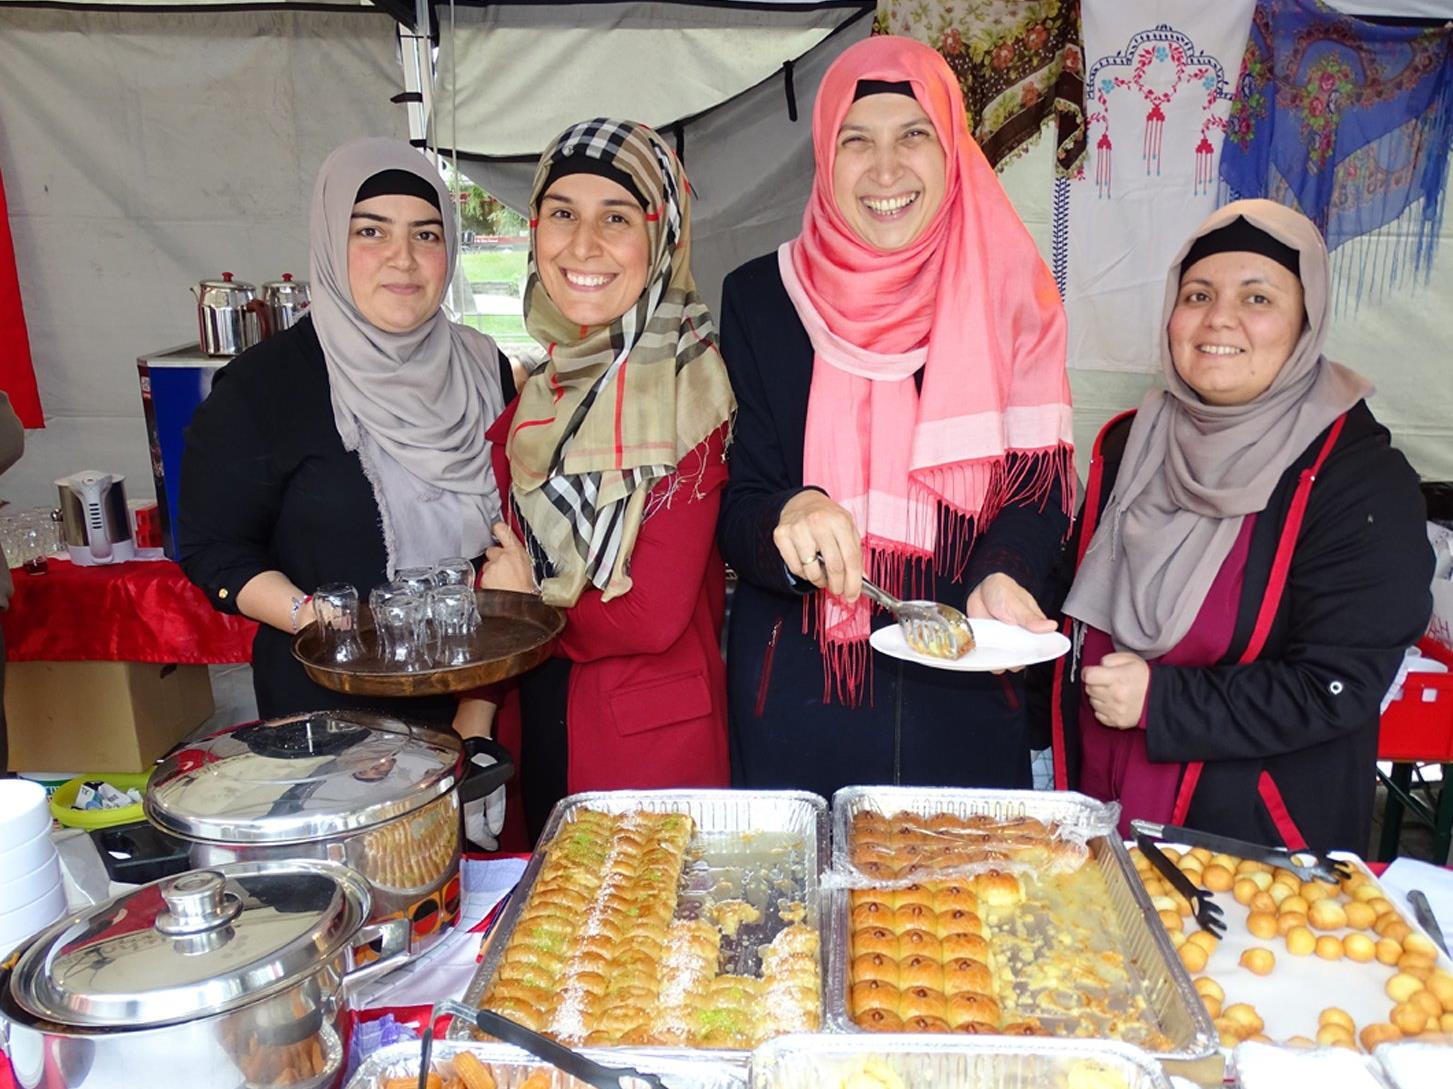 Der türkische Kulturverein „ATIB“ wartete mit köstlichen türkischen Spezialitäten auf.